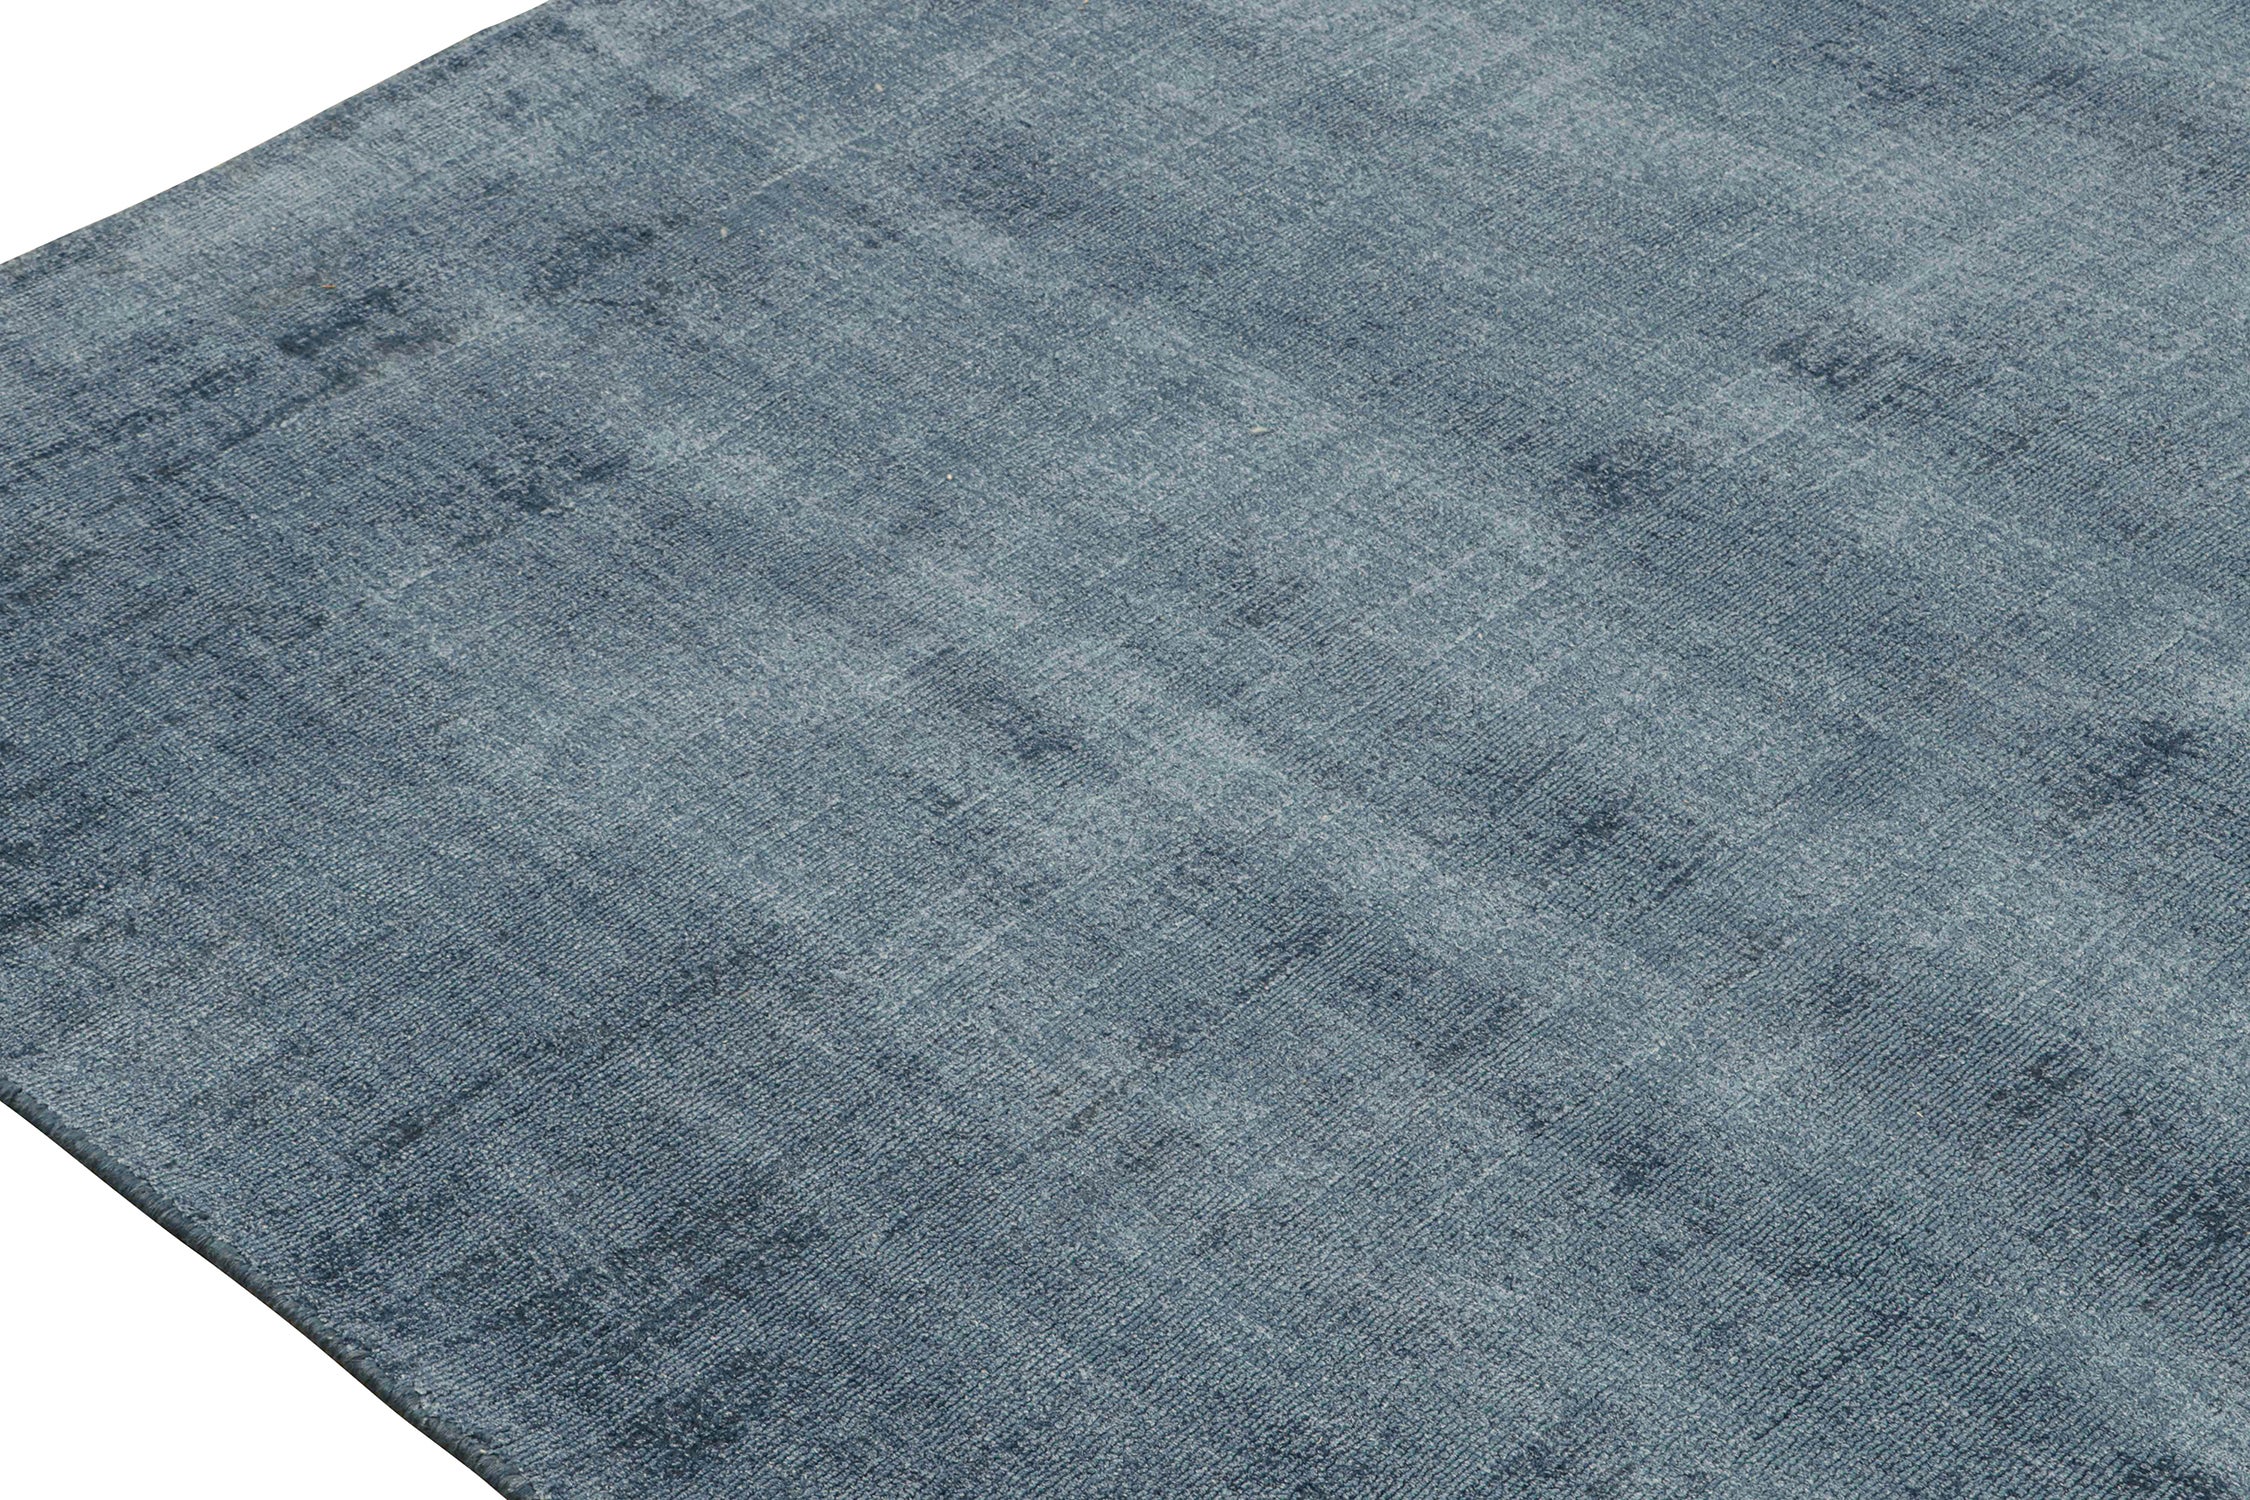 Moderner Teppich von Rug & Kilim aus einfarbig blauen Ton-in-Ton-Streifen